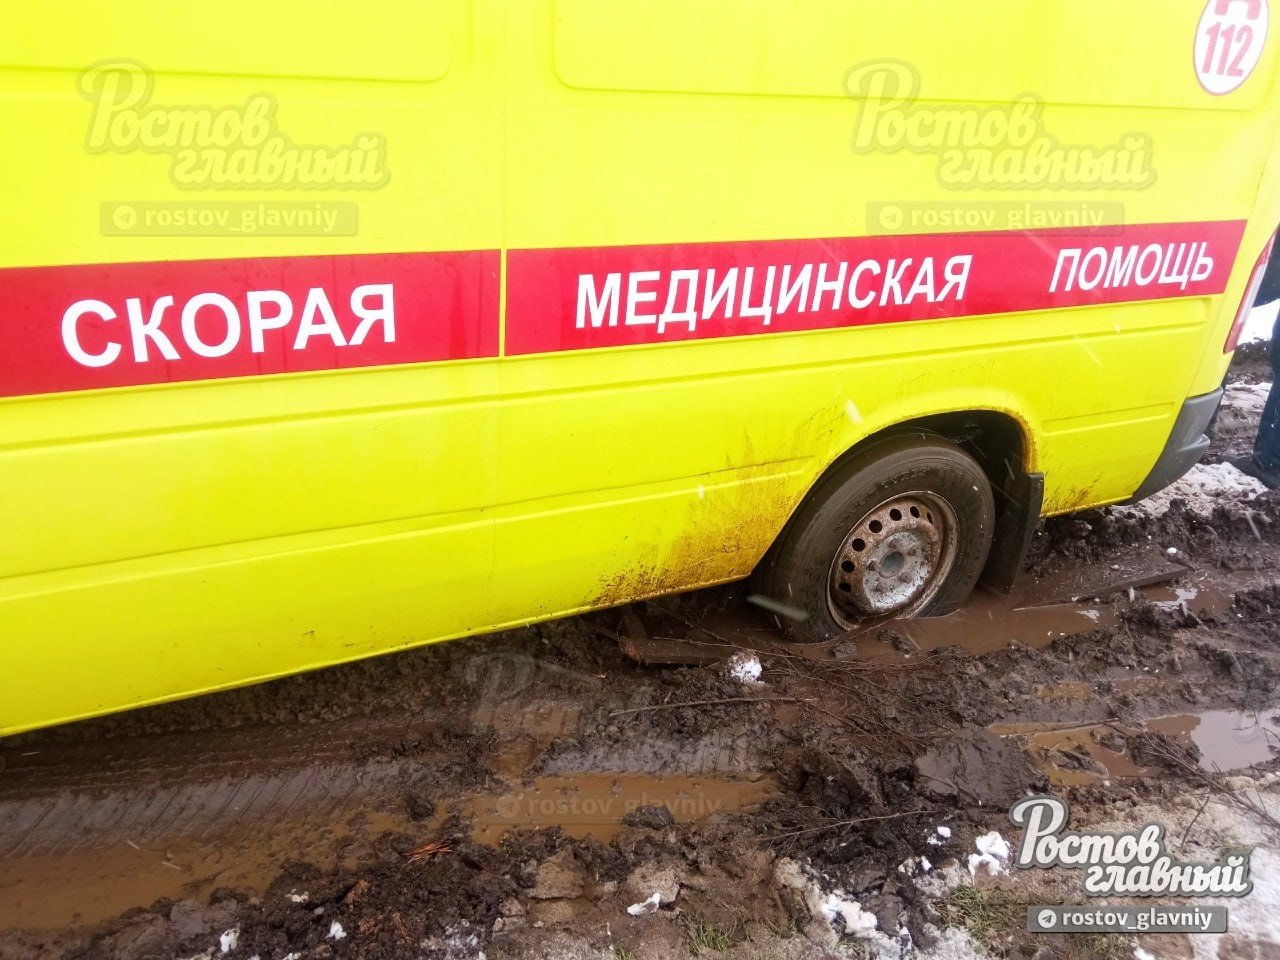 Реанимобиль застрял в грязи на Ростовском море